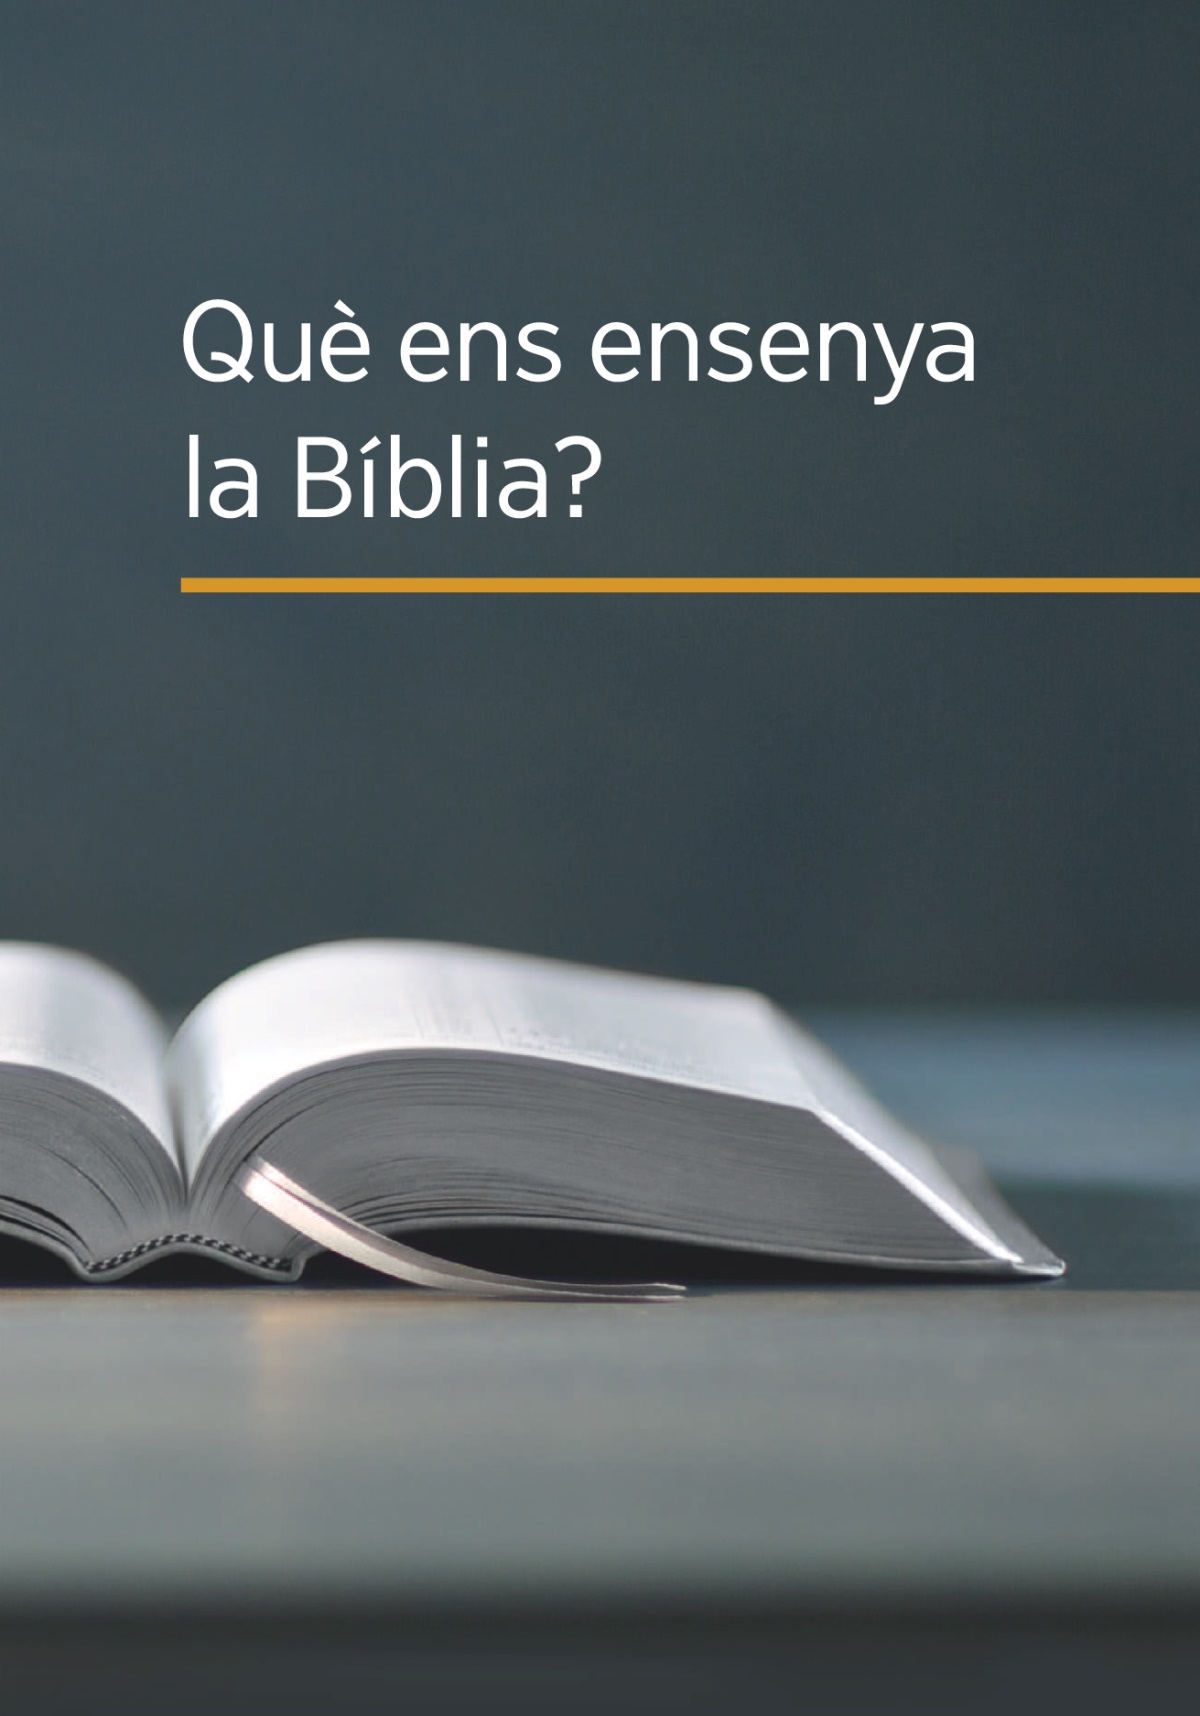 El llibre ‘Què ens ensenya la Bíblia?’